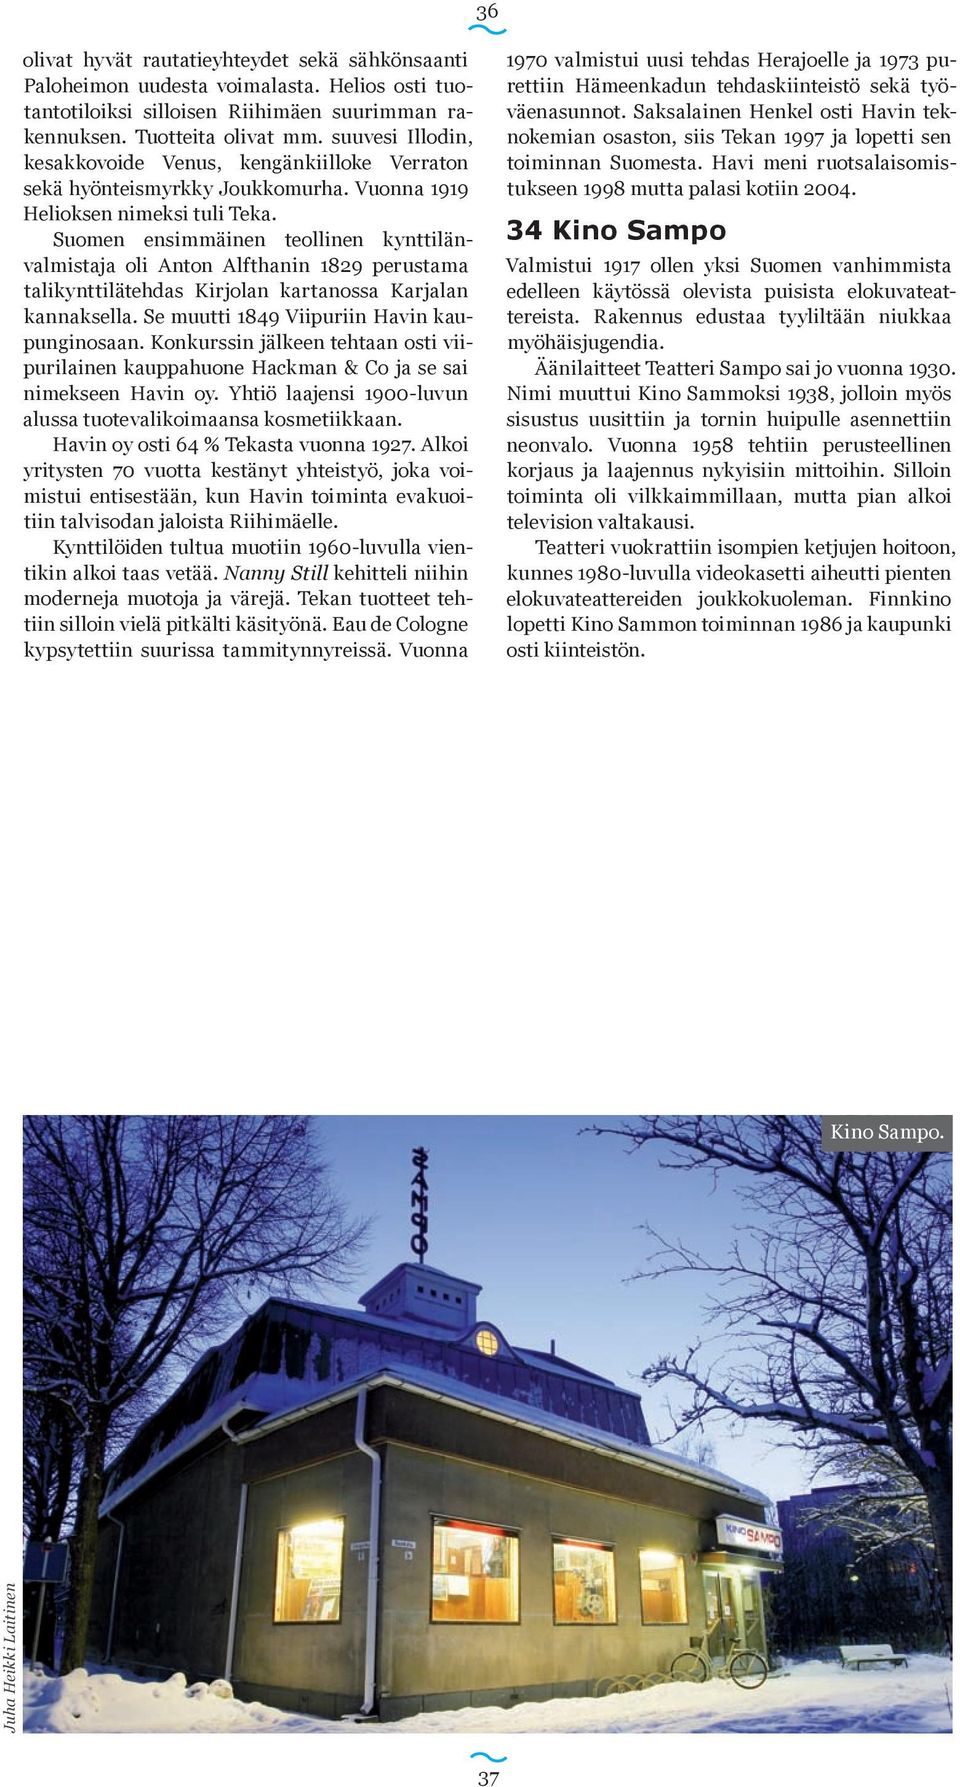 Suomen ensimmäinen teollinen kynttilänvalmistaja oli Anton Alf thanin 1829 perustama tali kynttilätehdas Kirjolan kartanossa Karjalan kannaksella. Se muutti 1849 Viipuriin Havin kaupunginosaan.